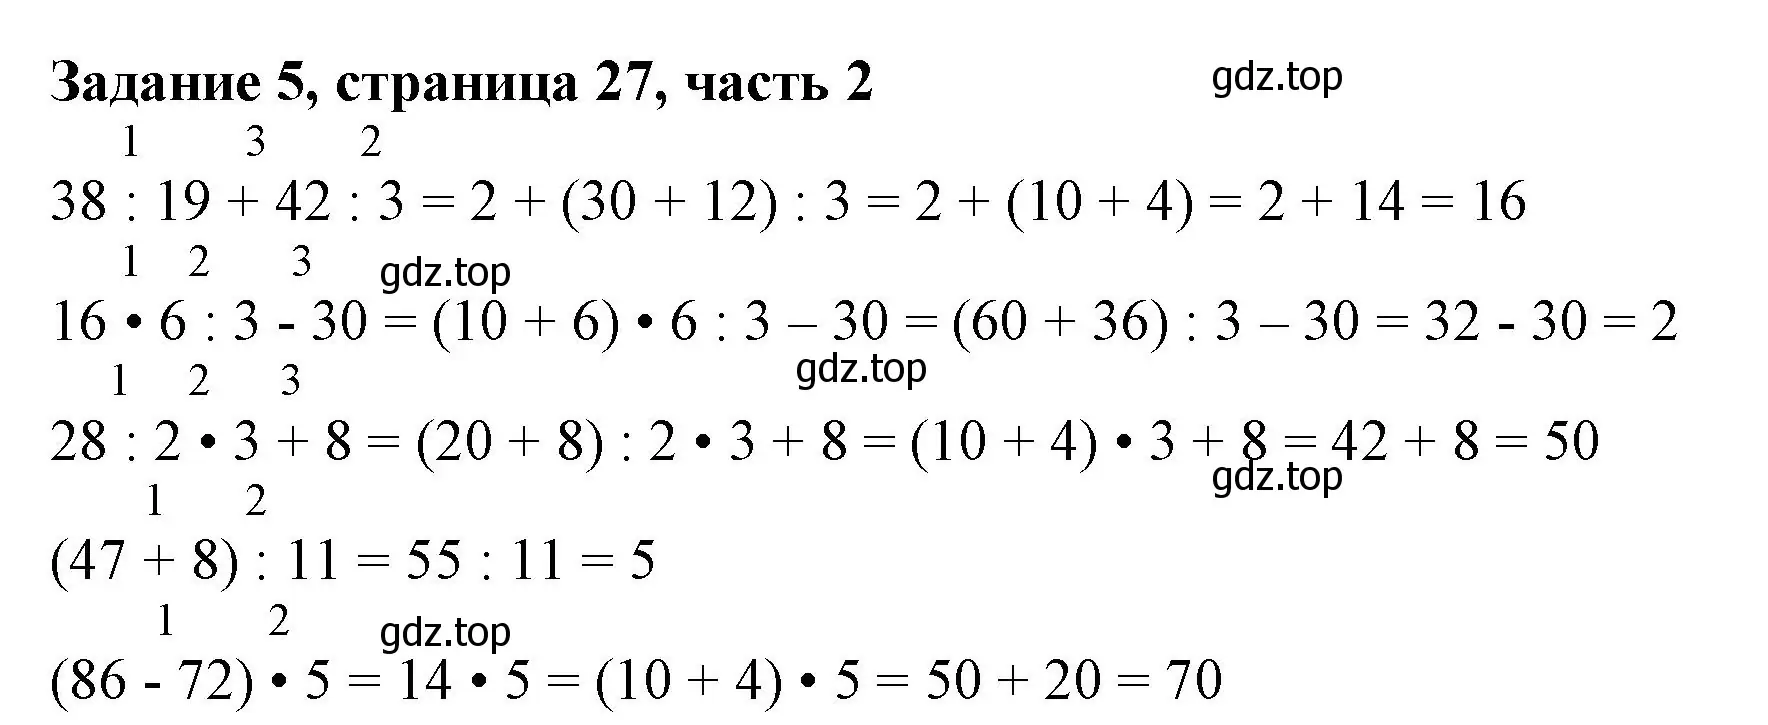 Решение номер 5 (страница 27) гдз по математике 3 класс Моро, Бантова, учебник 2 часть